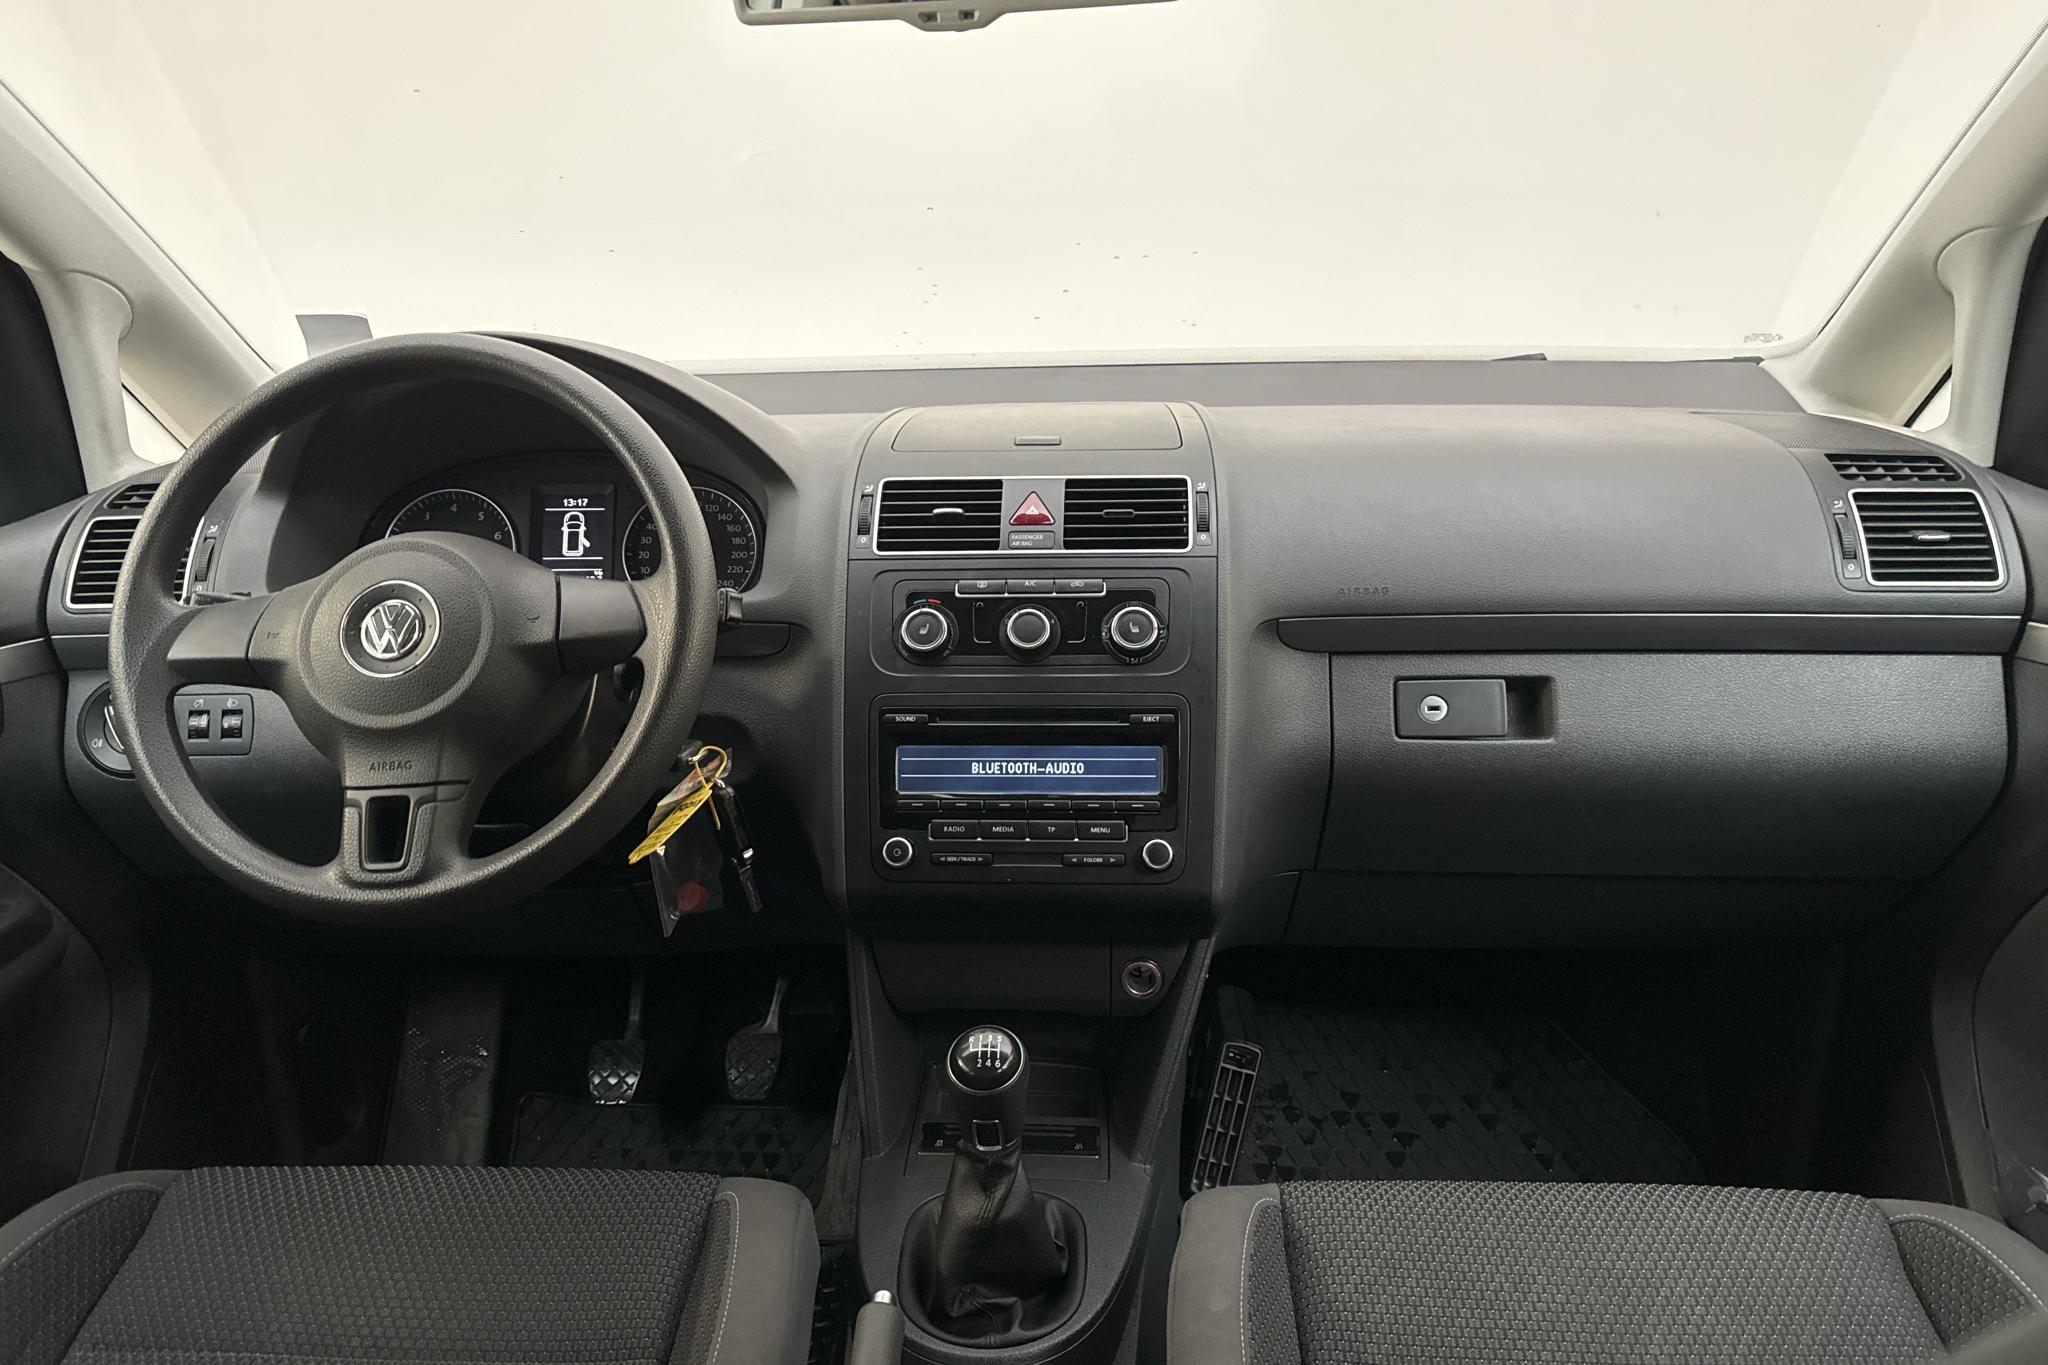 VW Touran 1.4 TGI EcoFuel (150hk) - 75 460 km - Manual - white - 2015